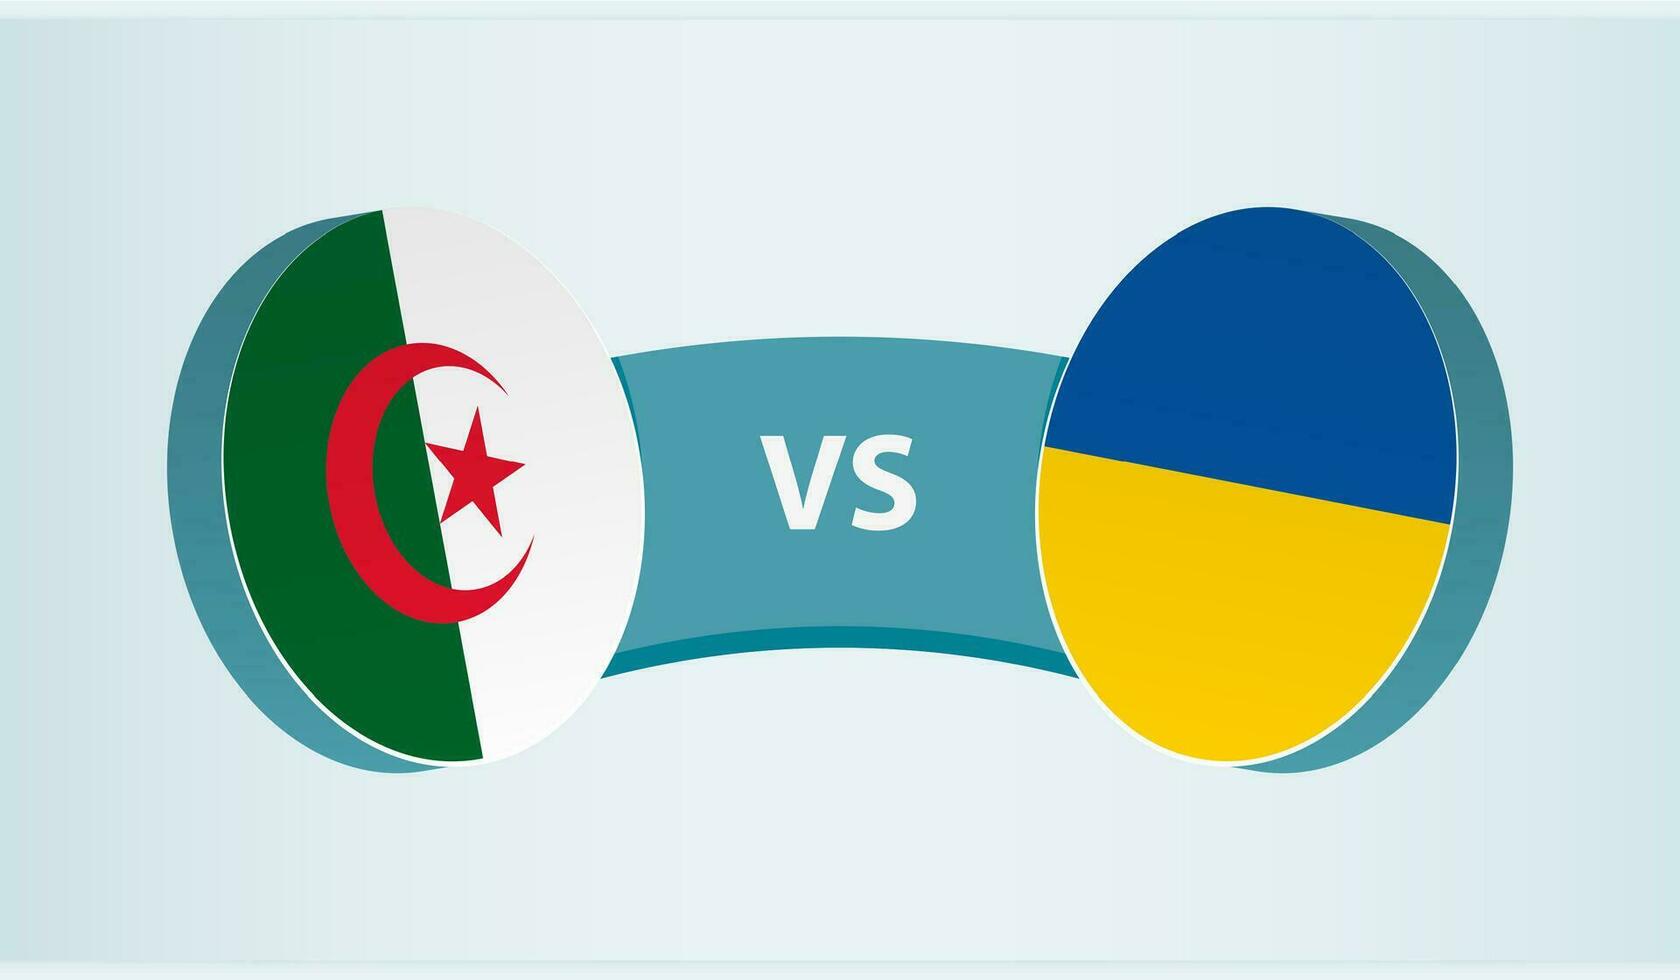 algeriet mot Ukraina, team sporter konkurrens begrepp. vektor